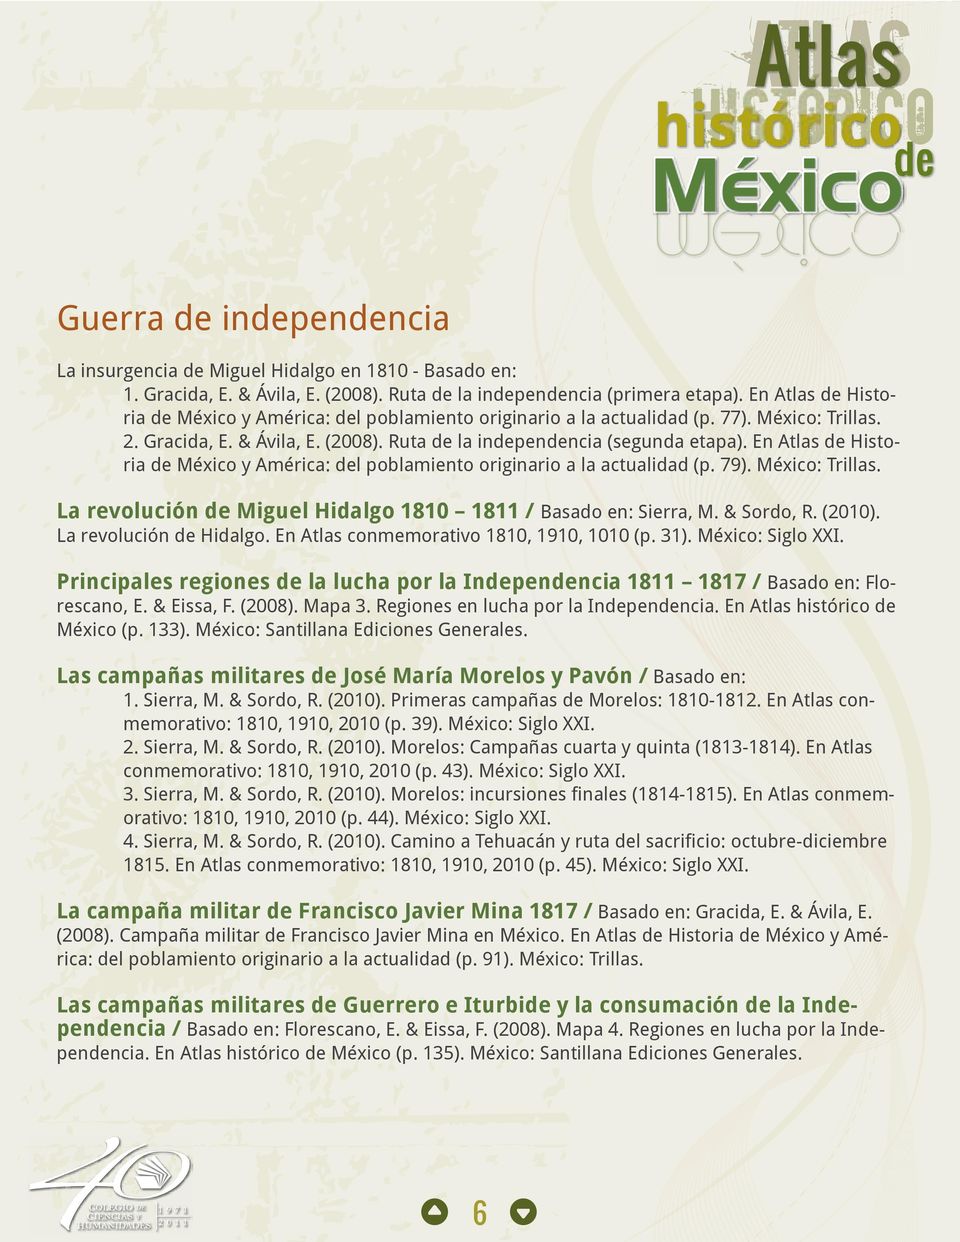 En Atlas de Historia de México y América: del poblamiento originario a la actualidad (p. 79). México: Trillas. La revolución de Miguel Hidalgo 1810 1811 / Basado en: Sierra, M. & Sordo, R. (2010).